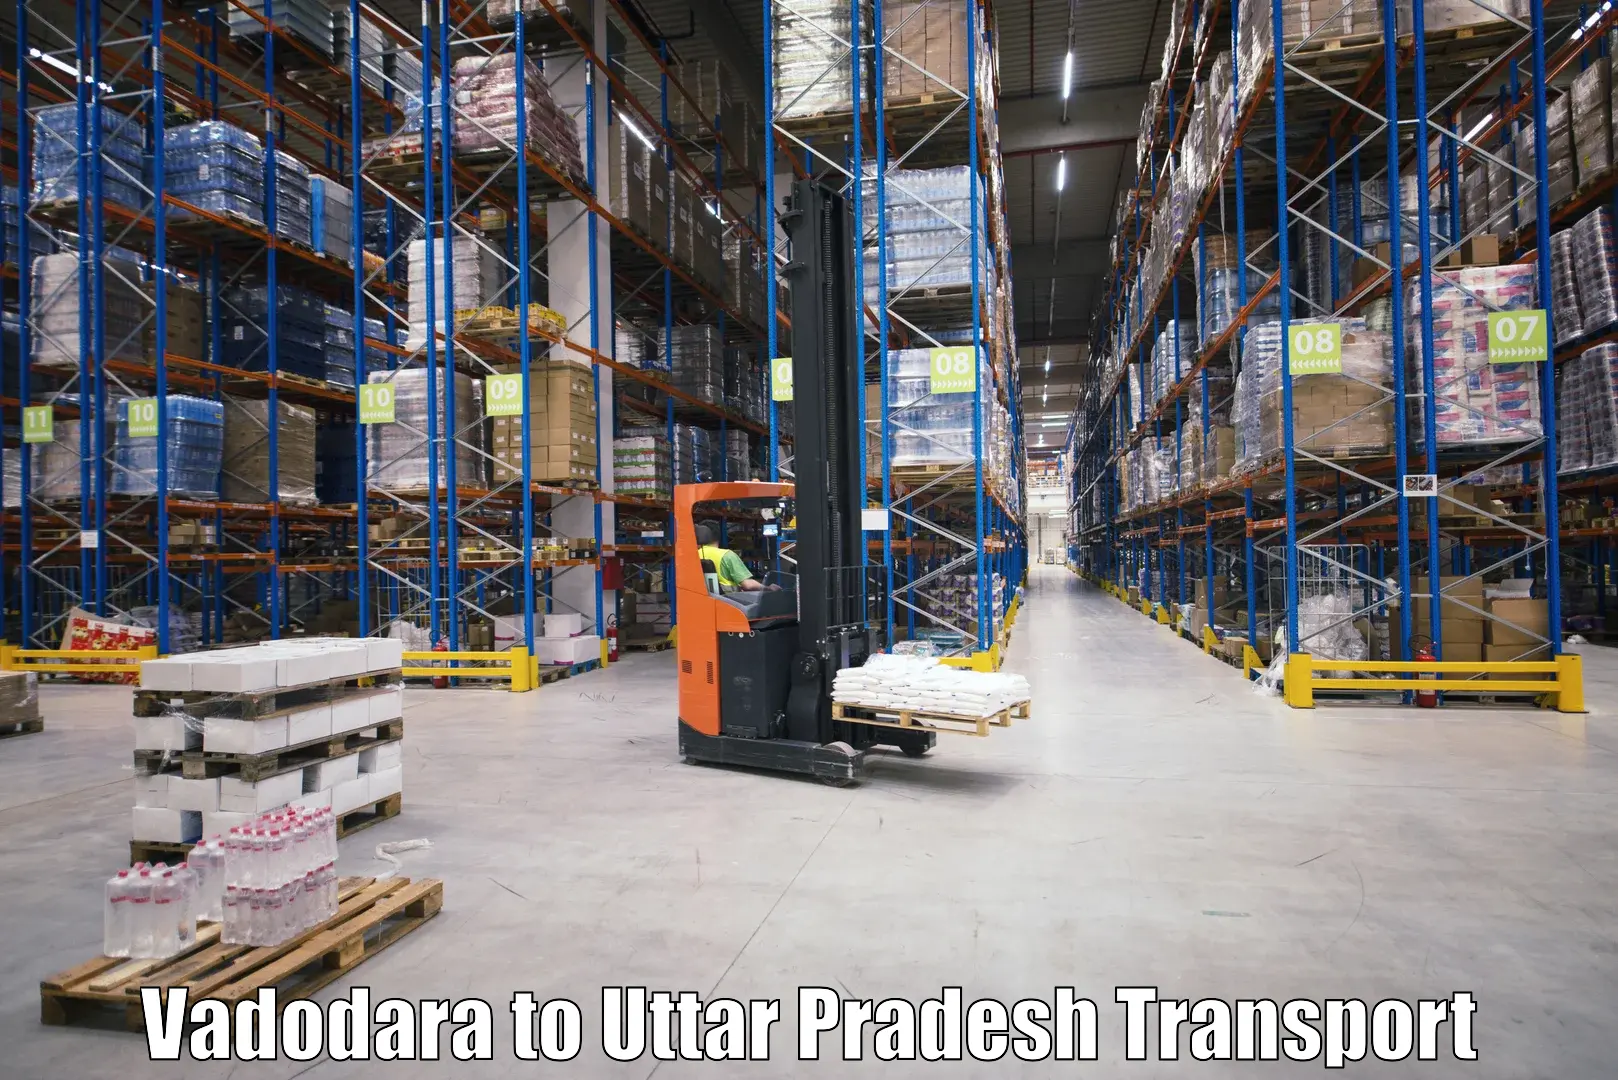 Land transport services Vadodara to Dullahpur